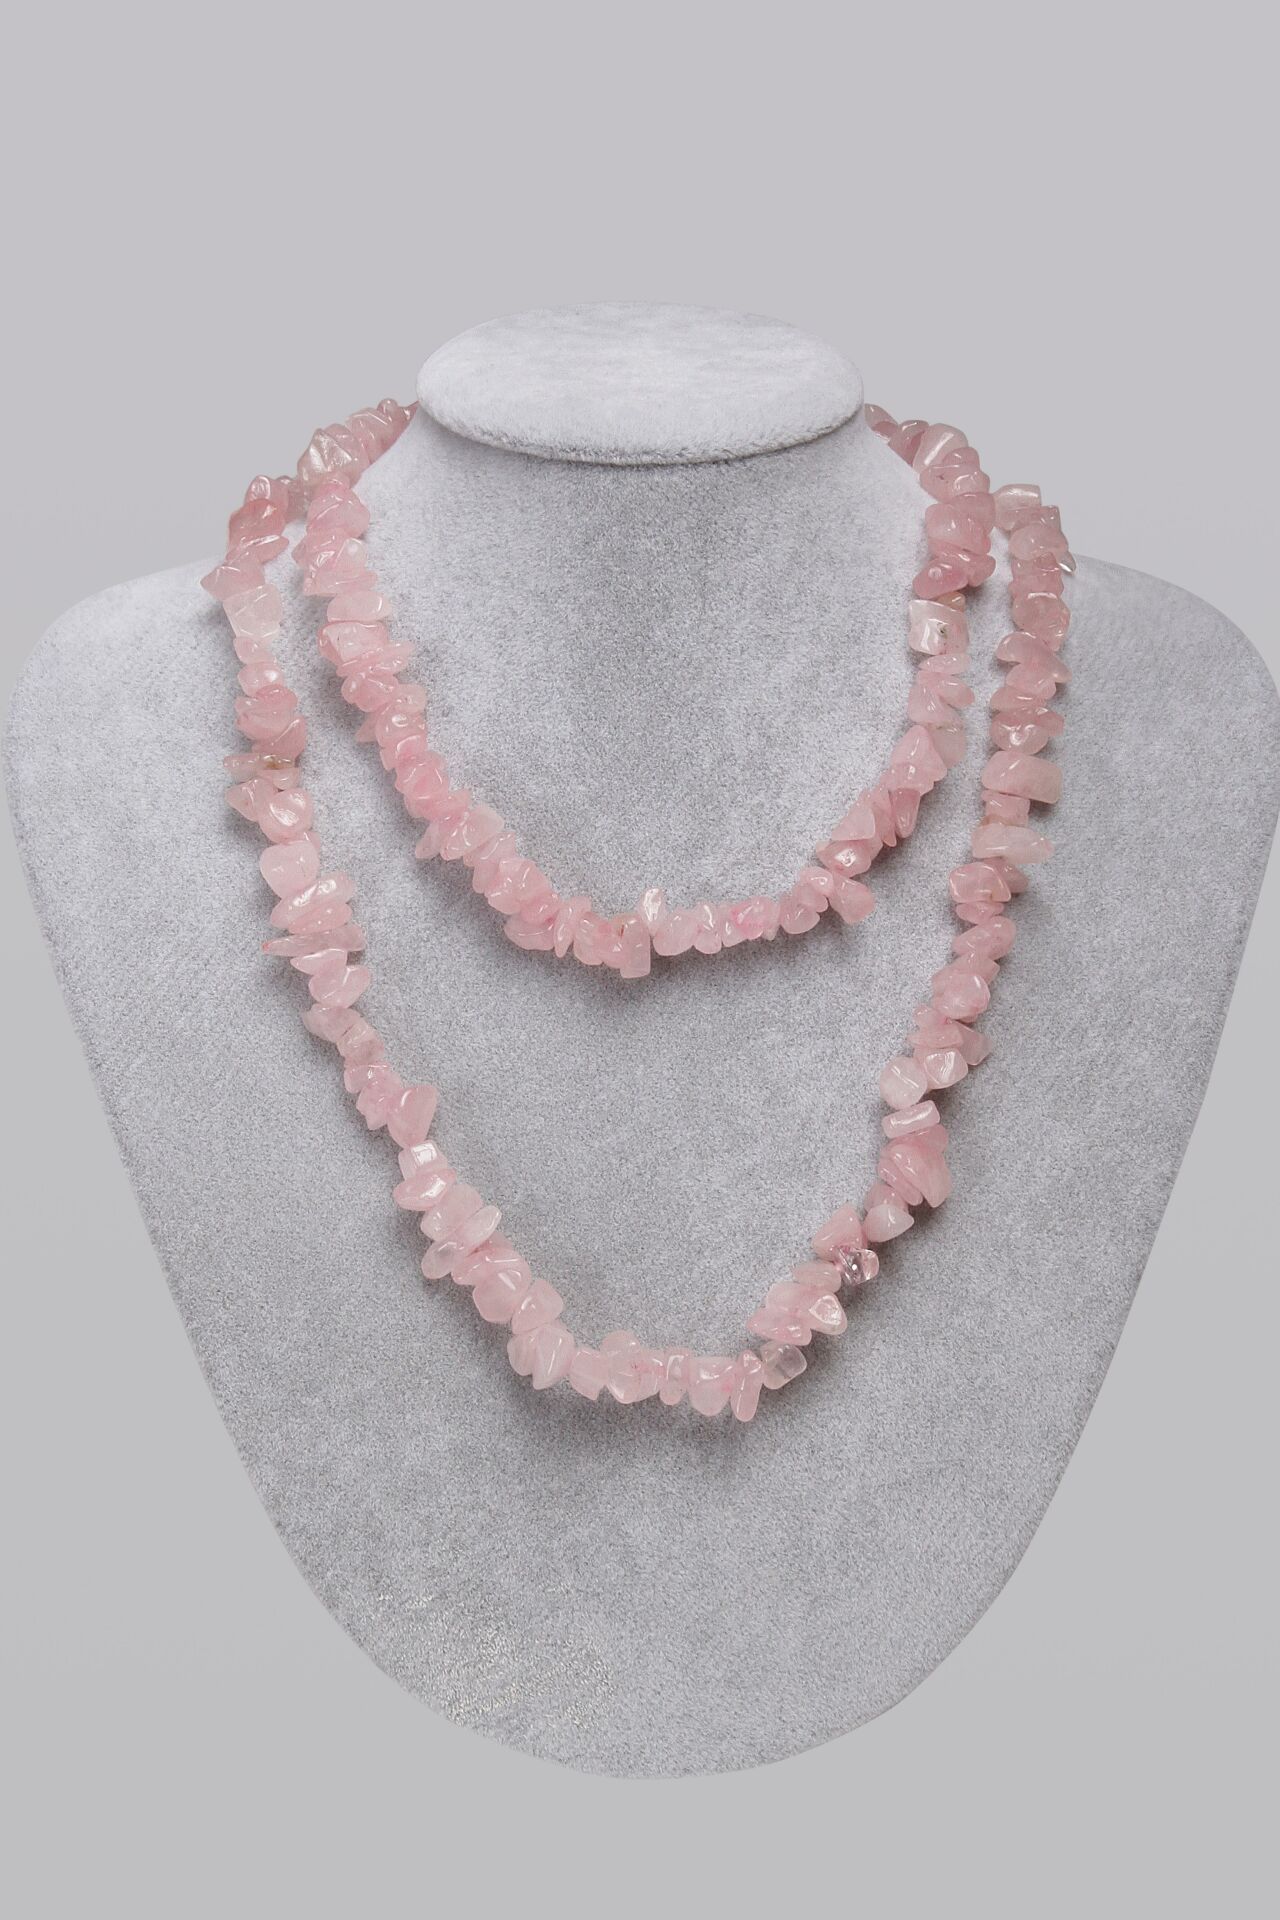 201 285 Natural Stone Rose Quartz Necklace